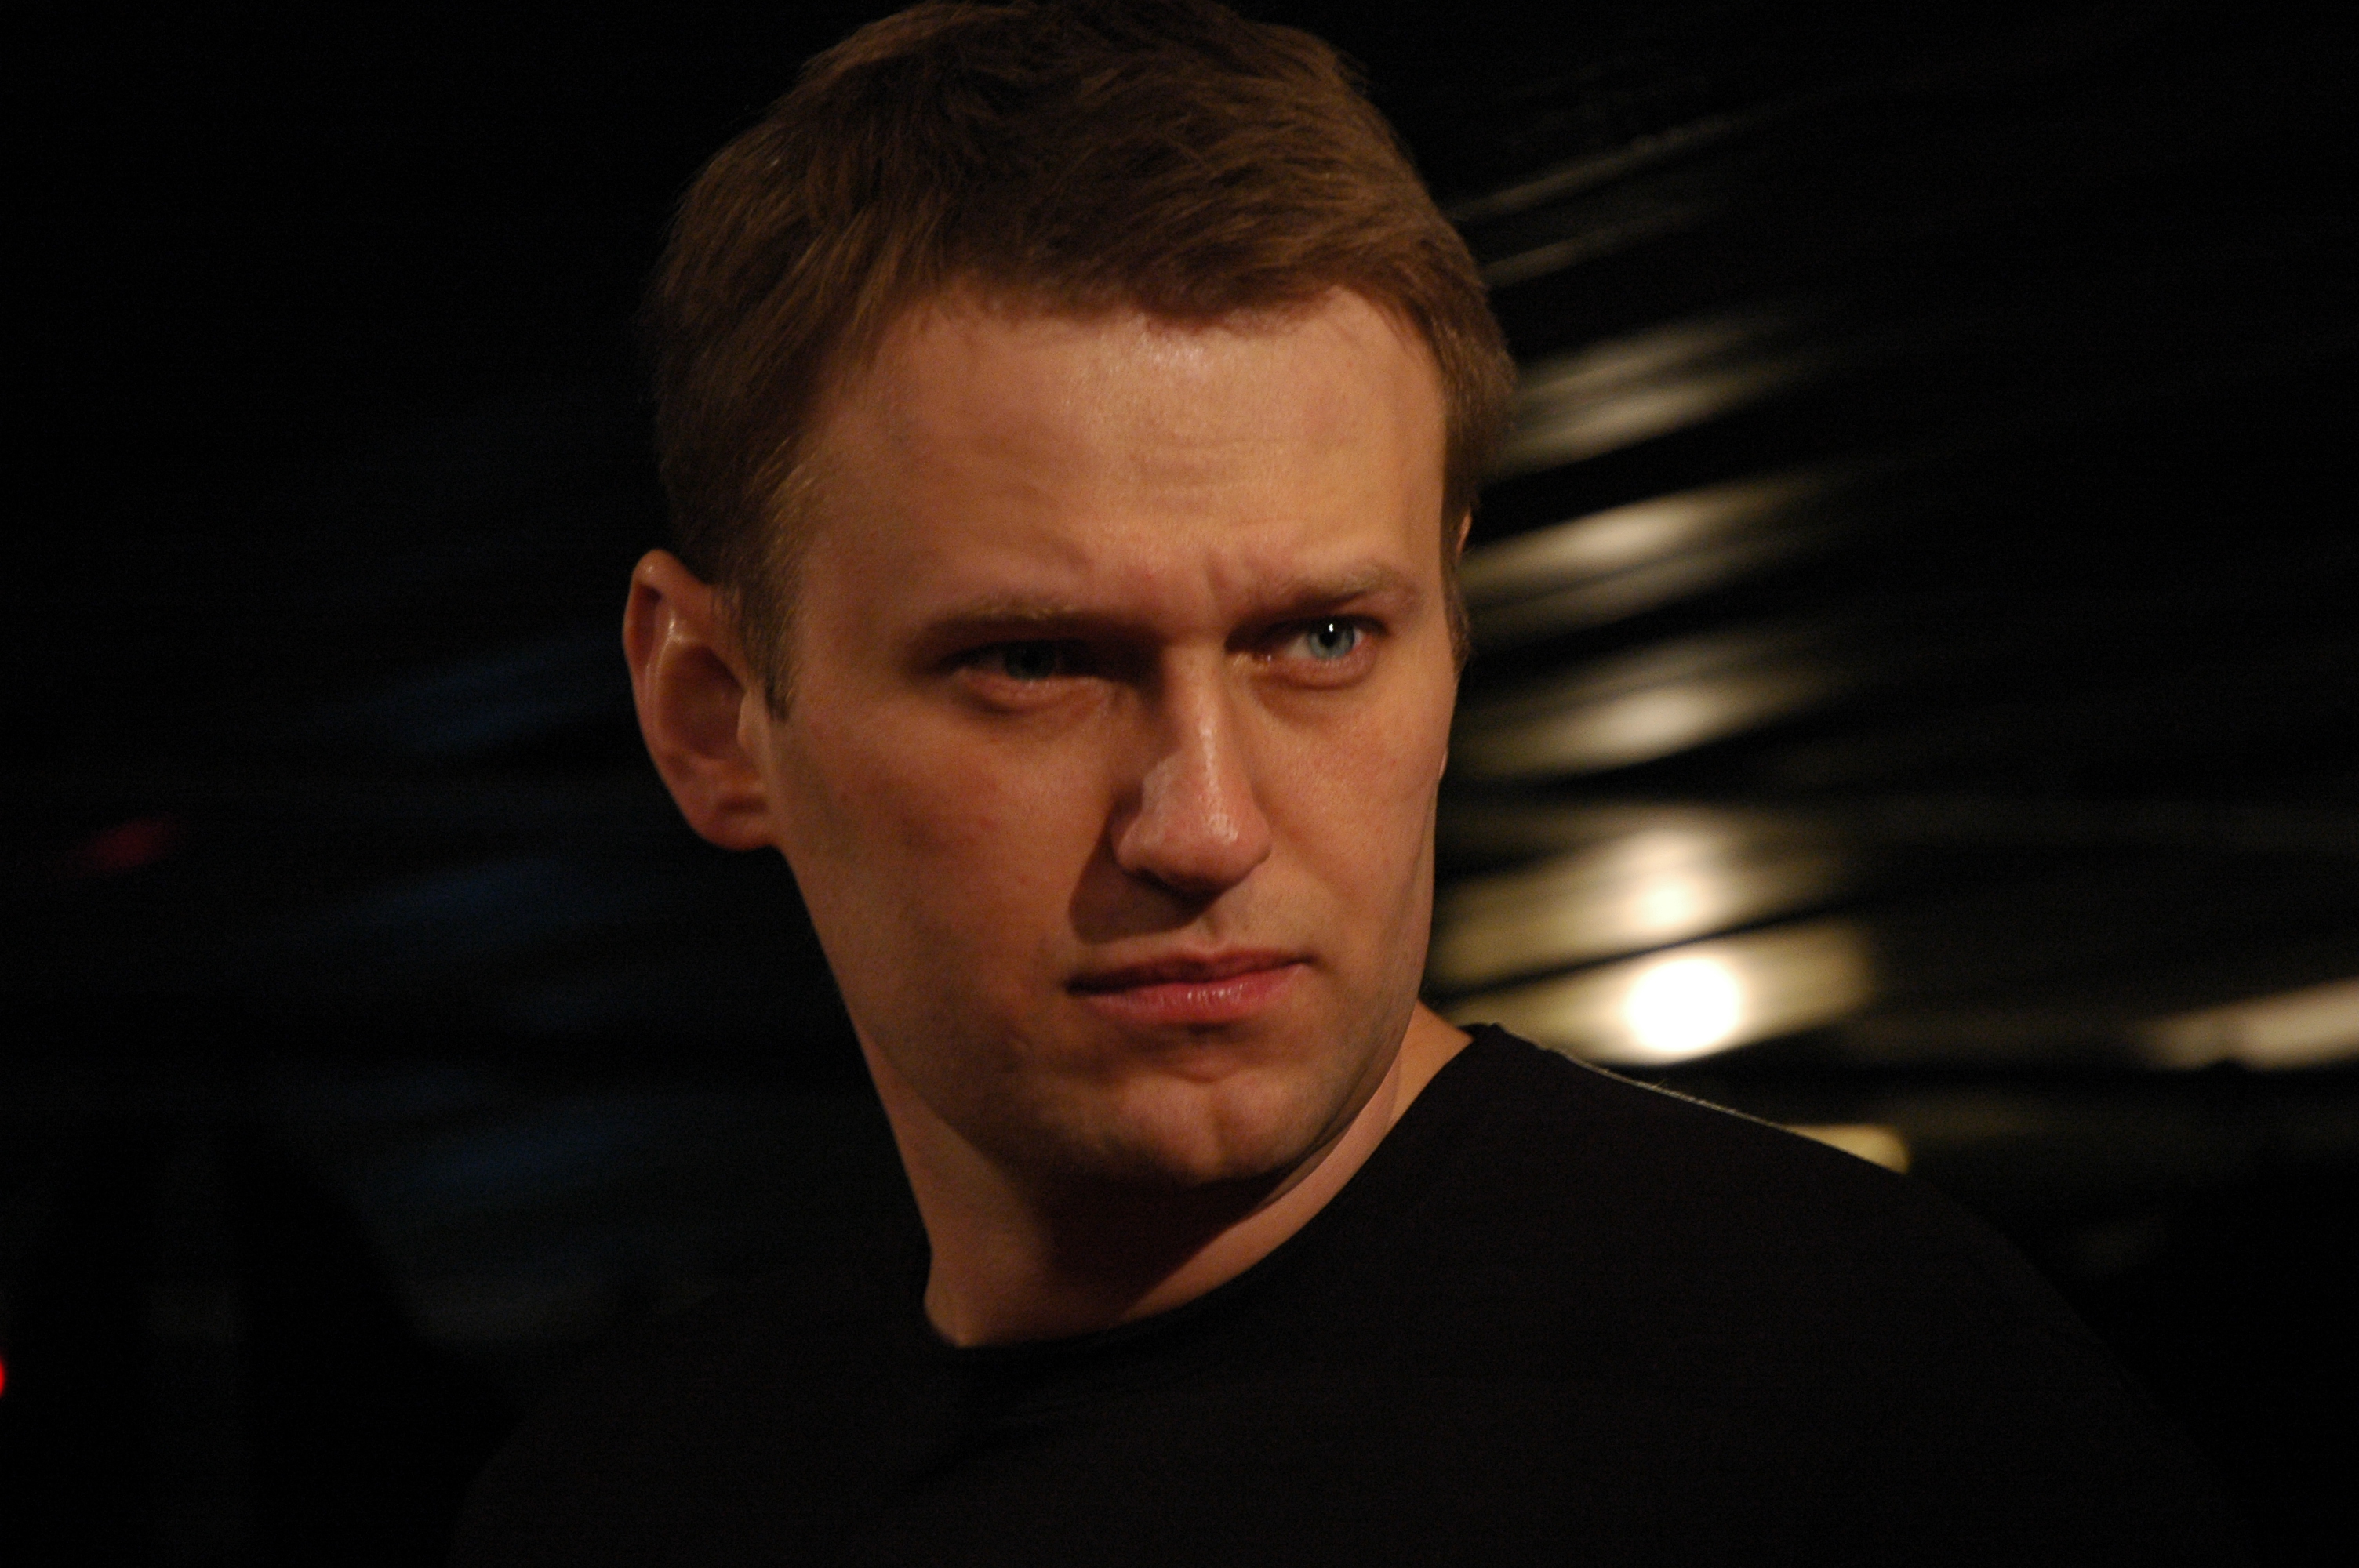 Навальный должен провести дебаты с Ходорковским, Каспаровым, Илларионовым, Портниковым и Касьяновым. Только тогда мы увидим его уровень, - Рабинович